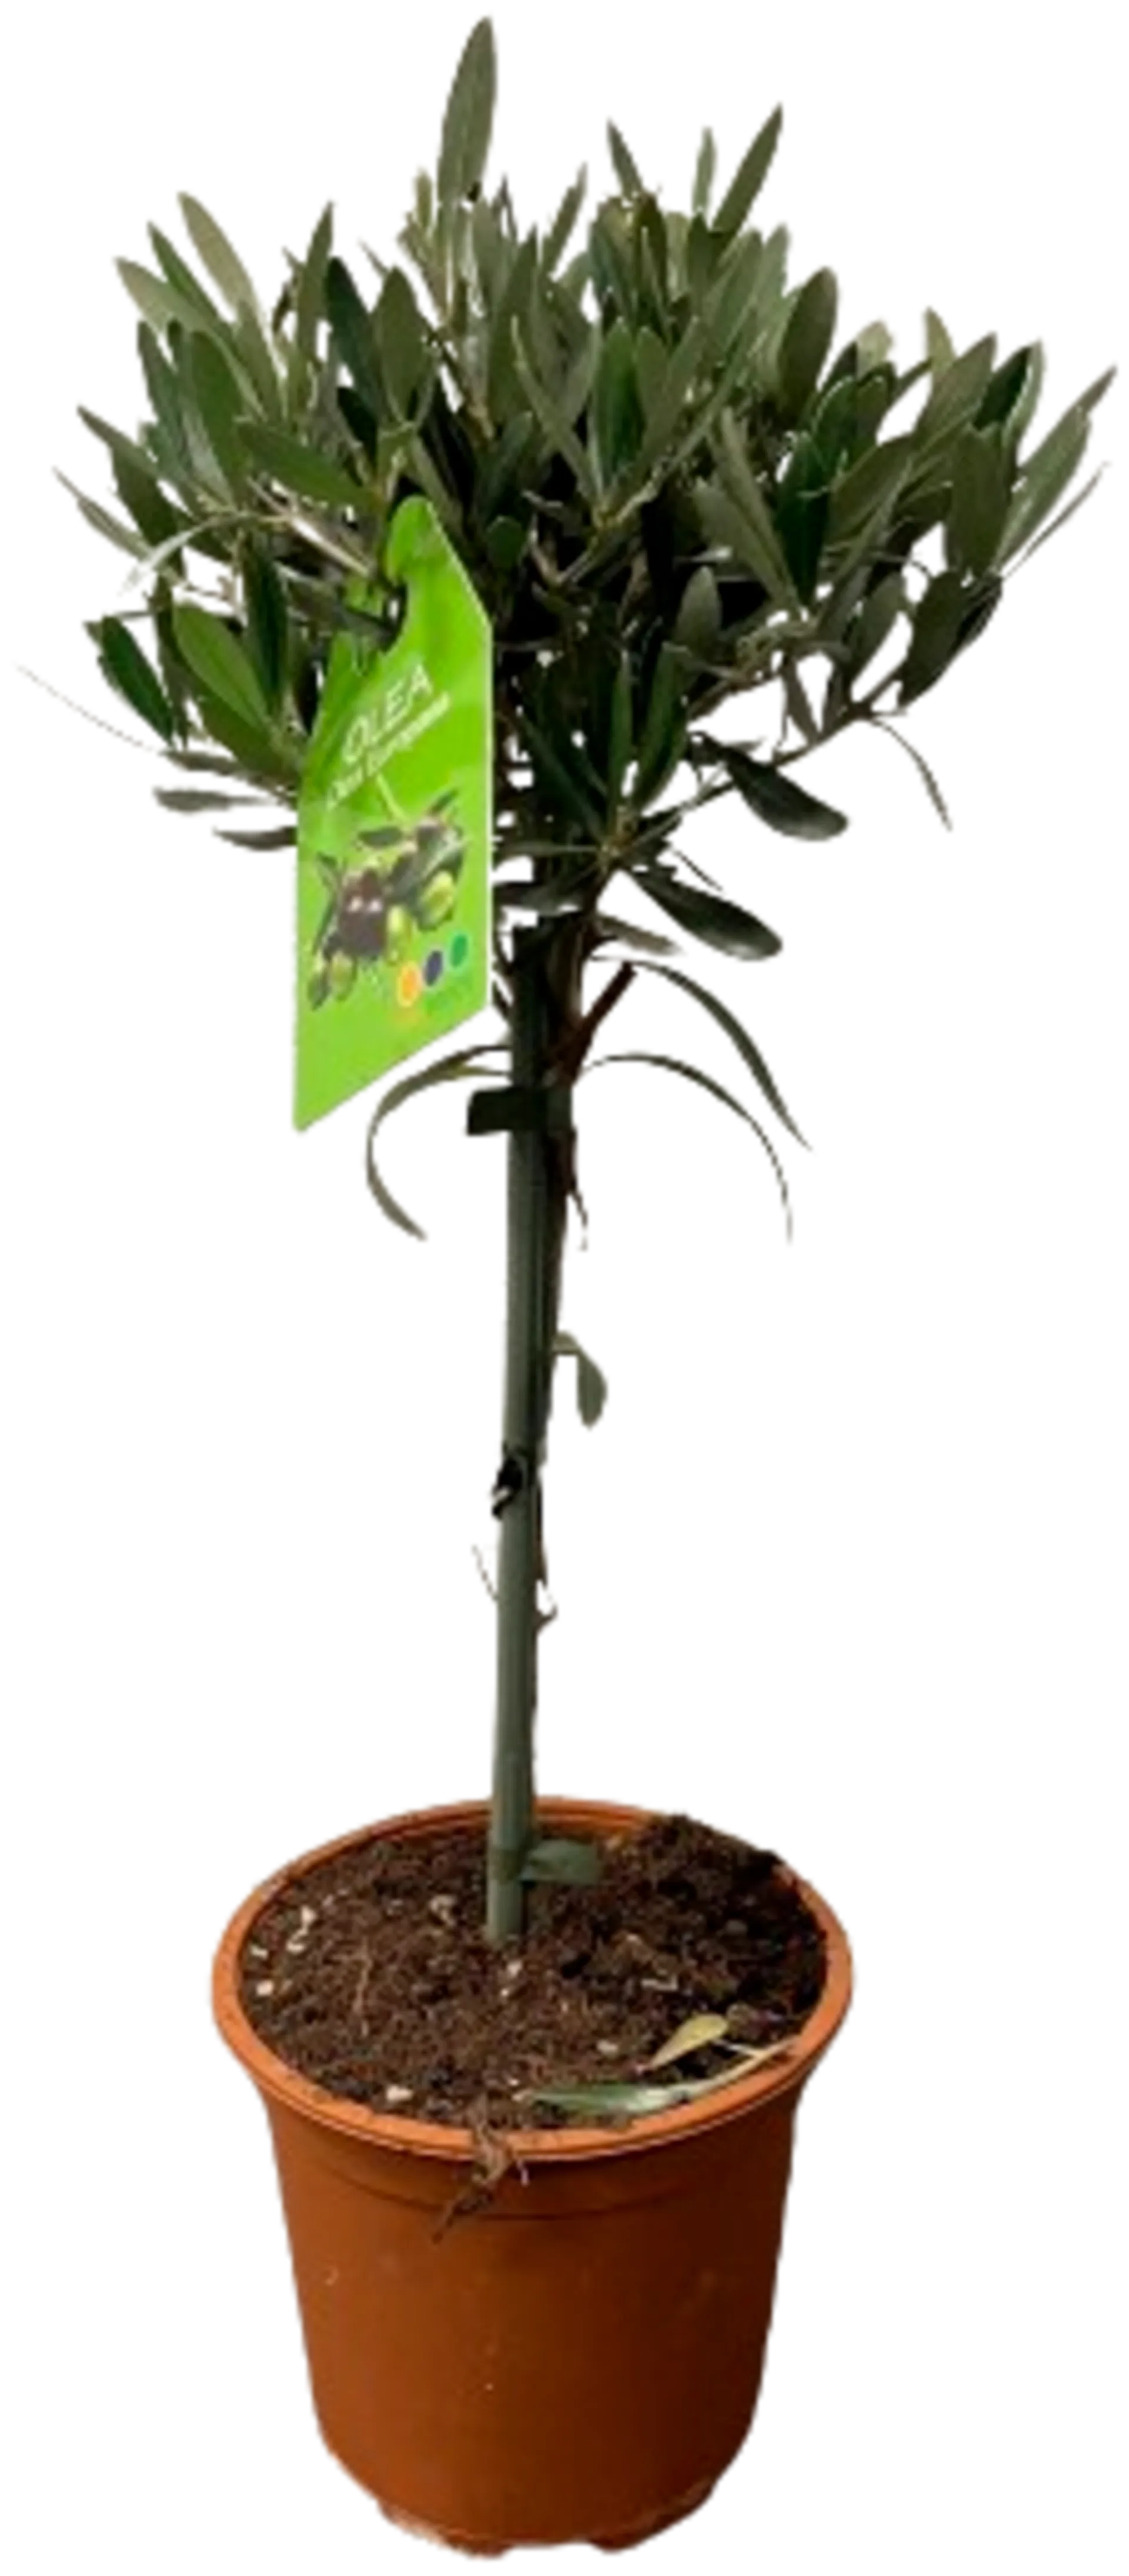 Oliivipuu korkeus 55 cm rk 16 cm